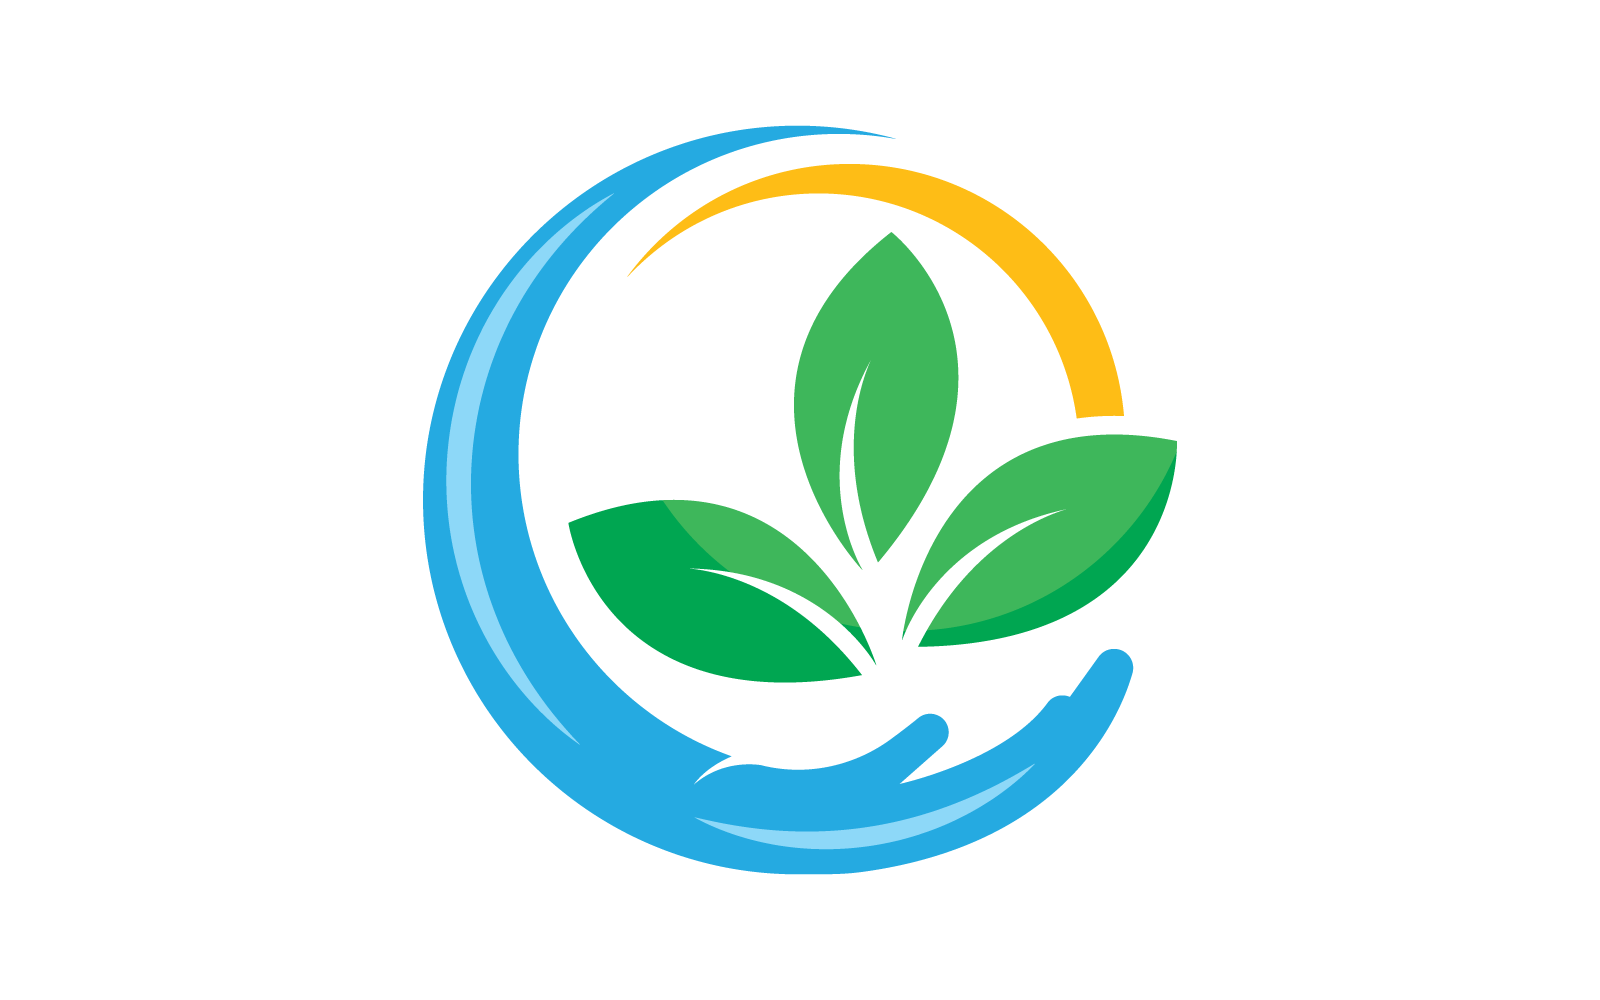 Eco care logo hand and leaf illustration flat design